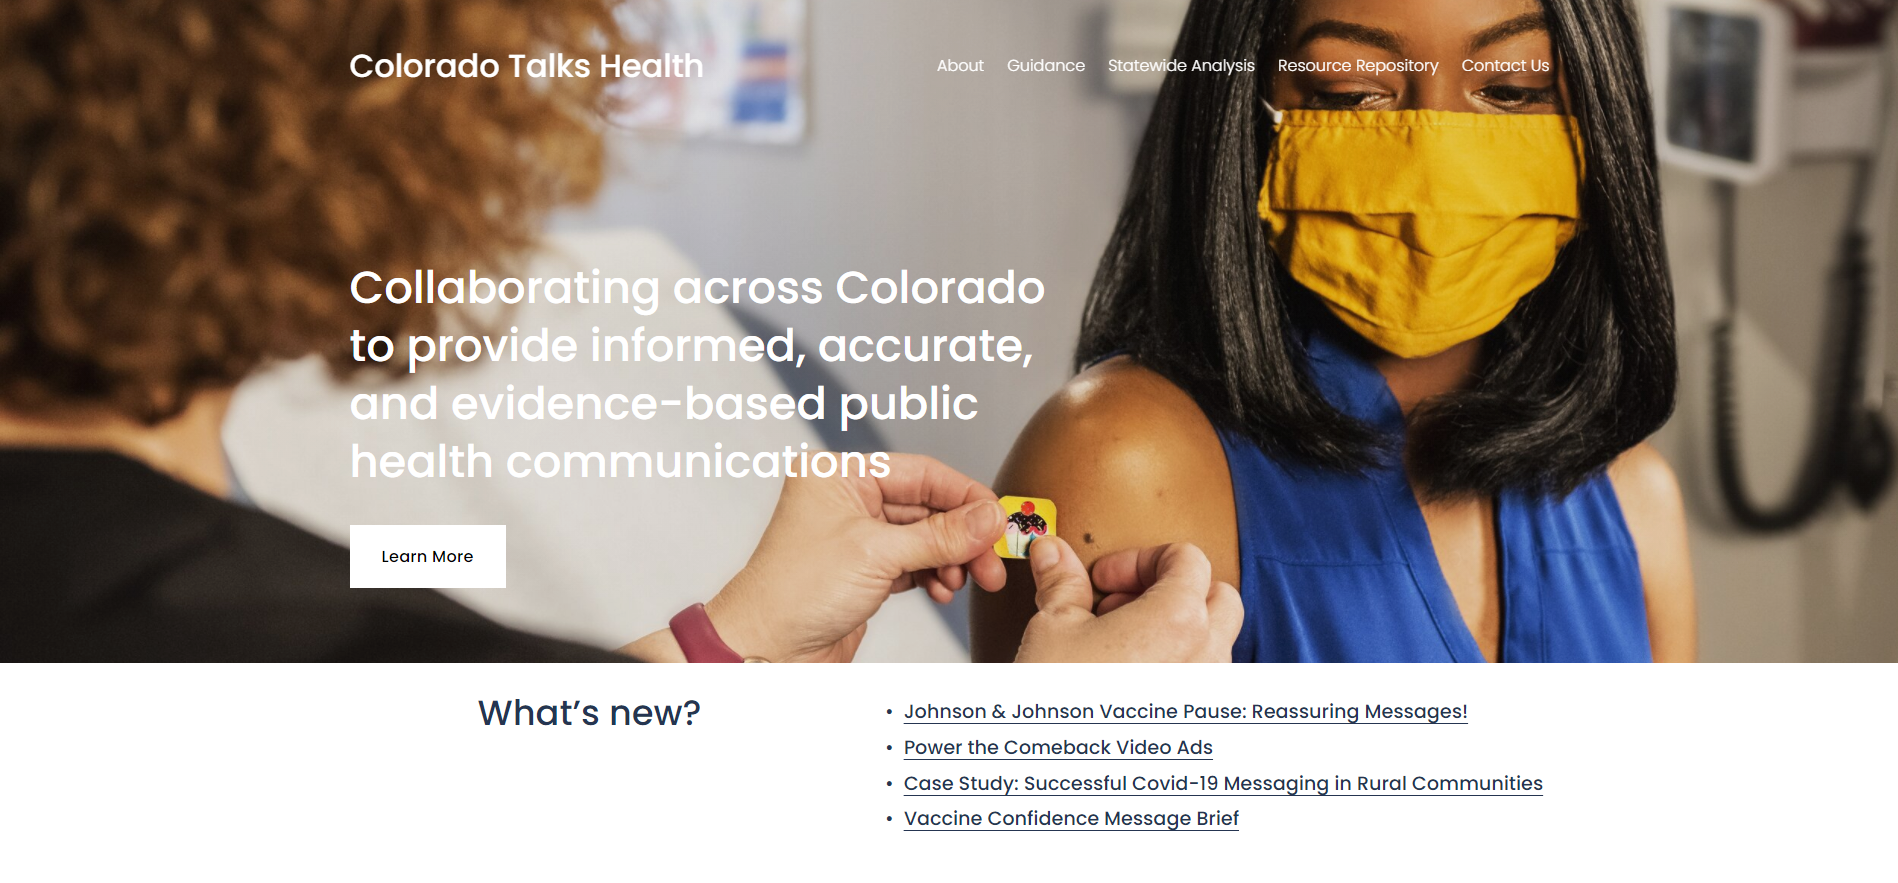 Colorado Talks Health Website Homepage